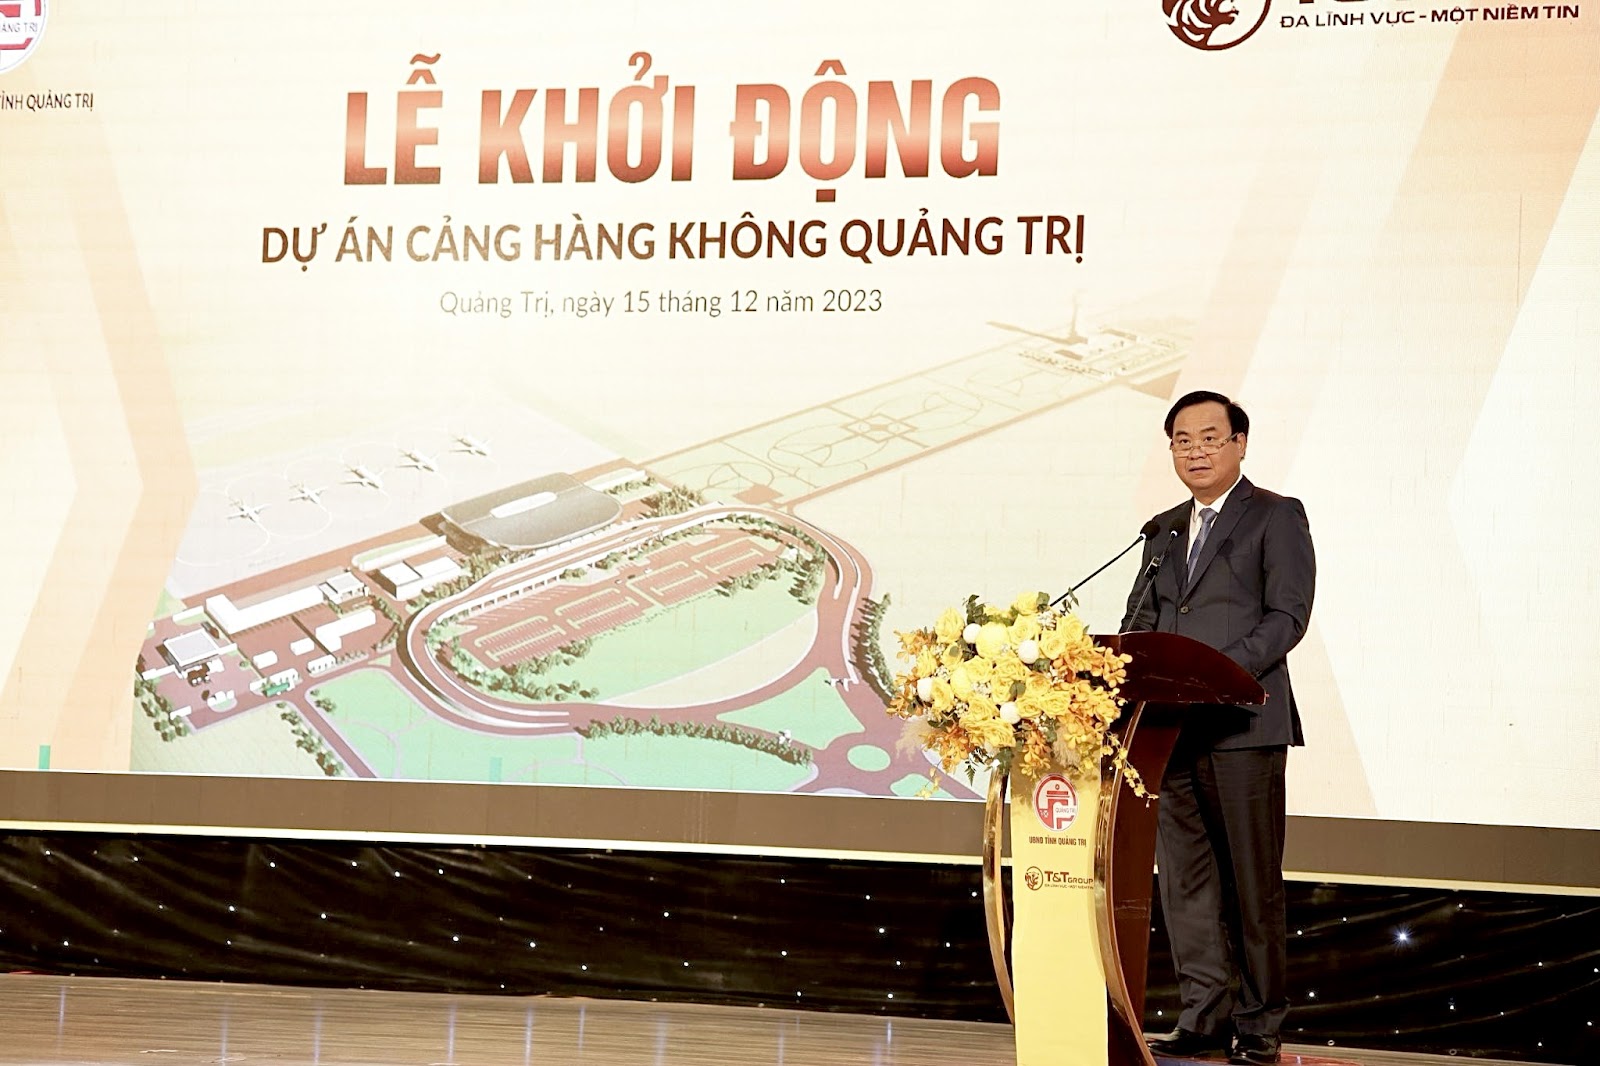 Ông Võ Văn Hưng, Phó Bí thư Tỉnh ủy, Chủ tịch UBND tỉnh Quảng Trị phát biểu tại sự kiện